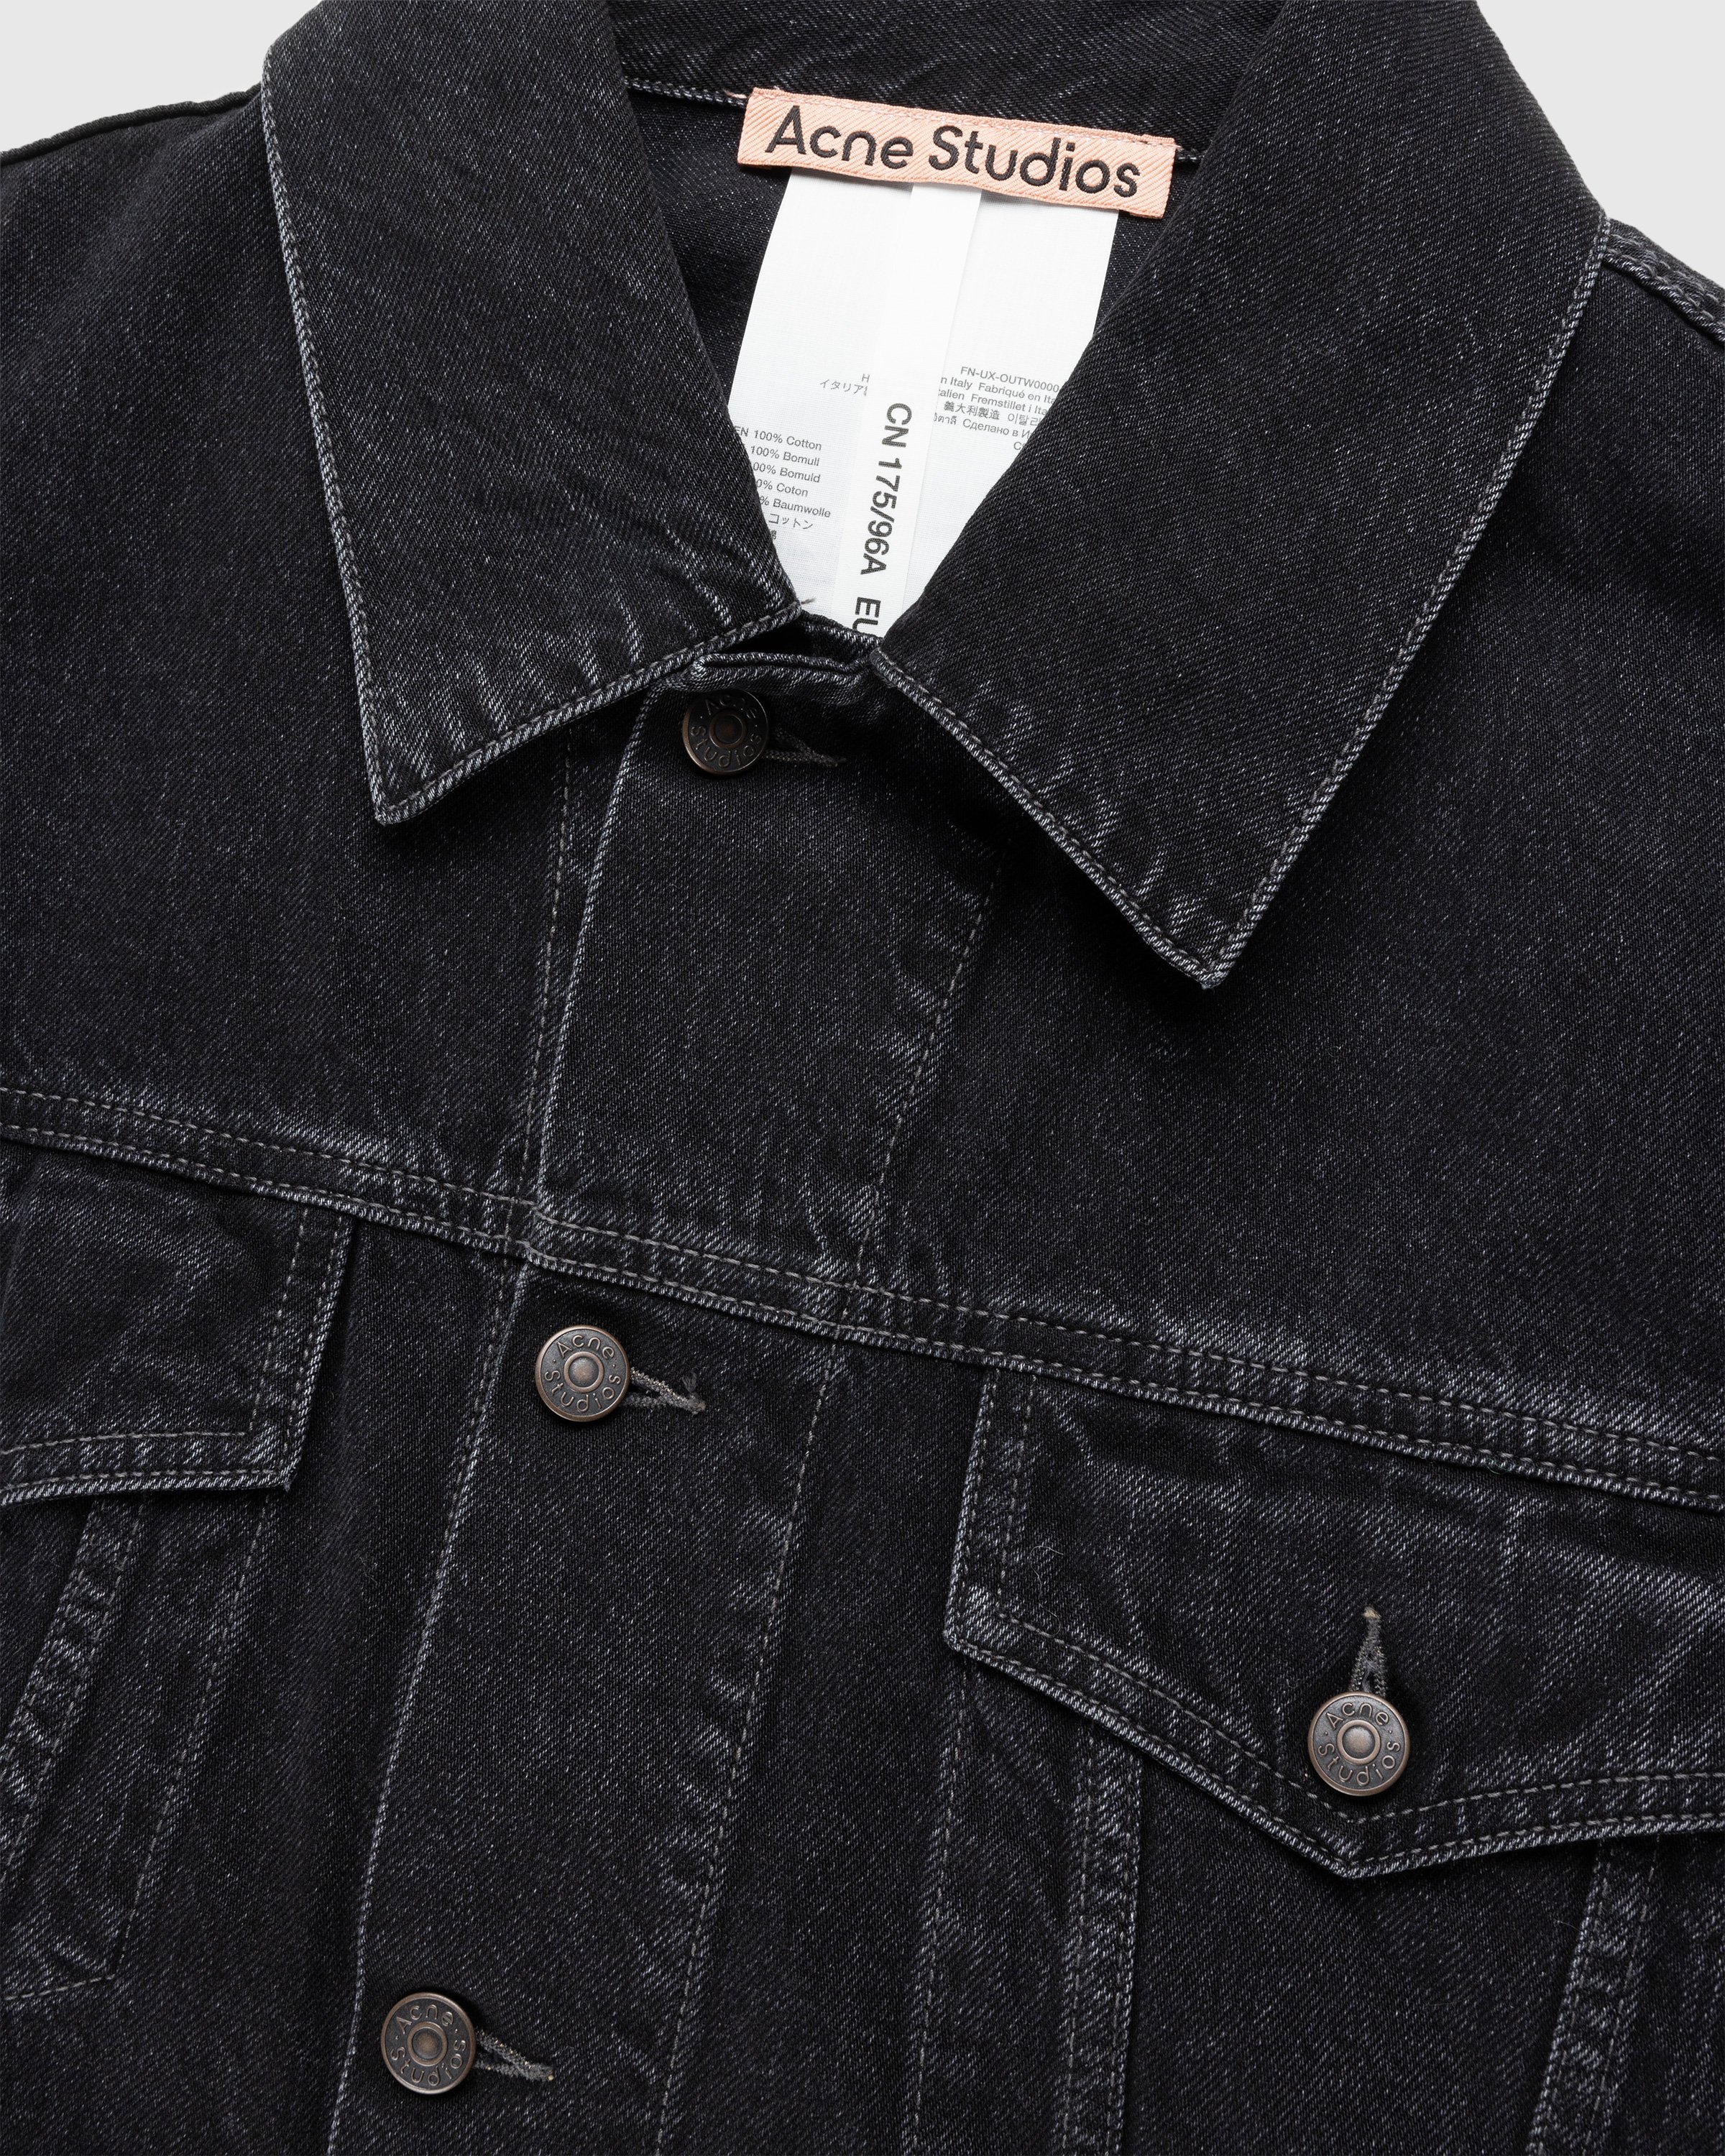 Acne Studios - Oversized Denim Jacket Black - Clothing - Black - Image 6